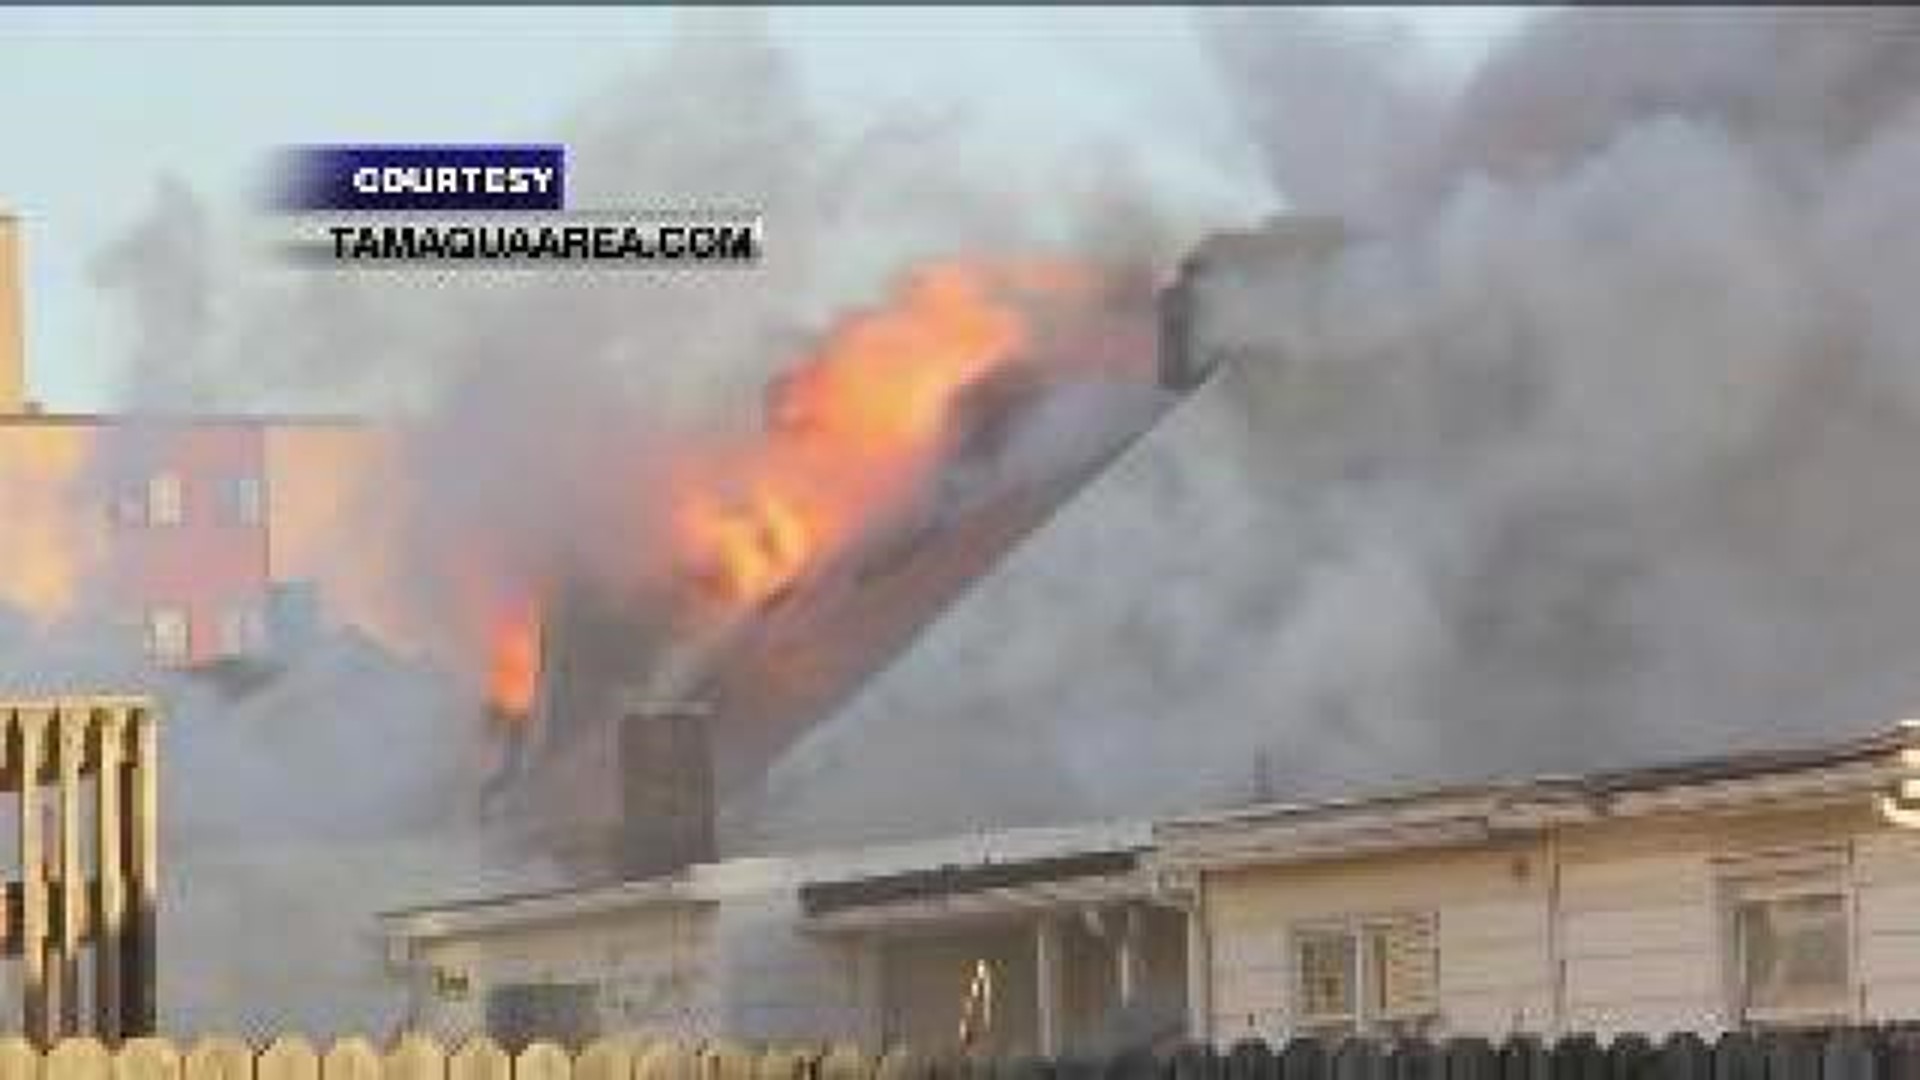 Crews Battle Blaze in Below Zero Temperatures